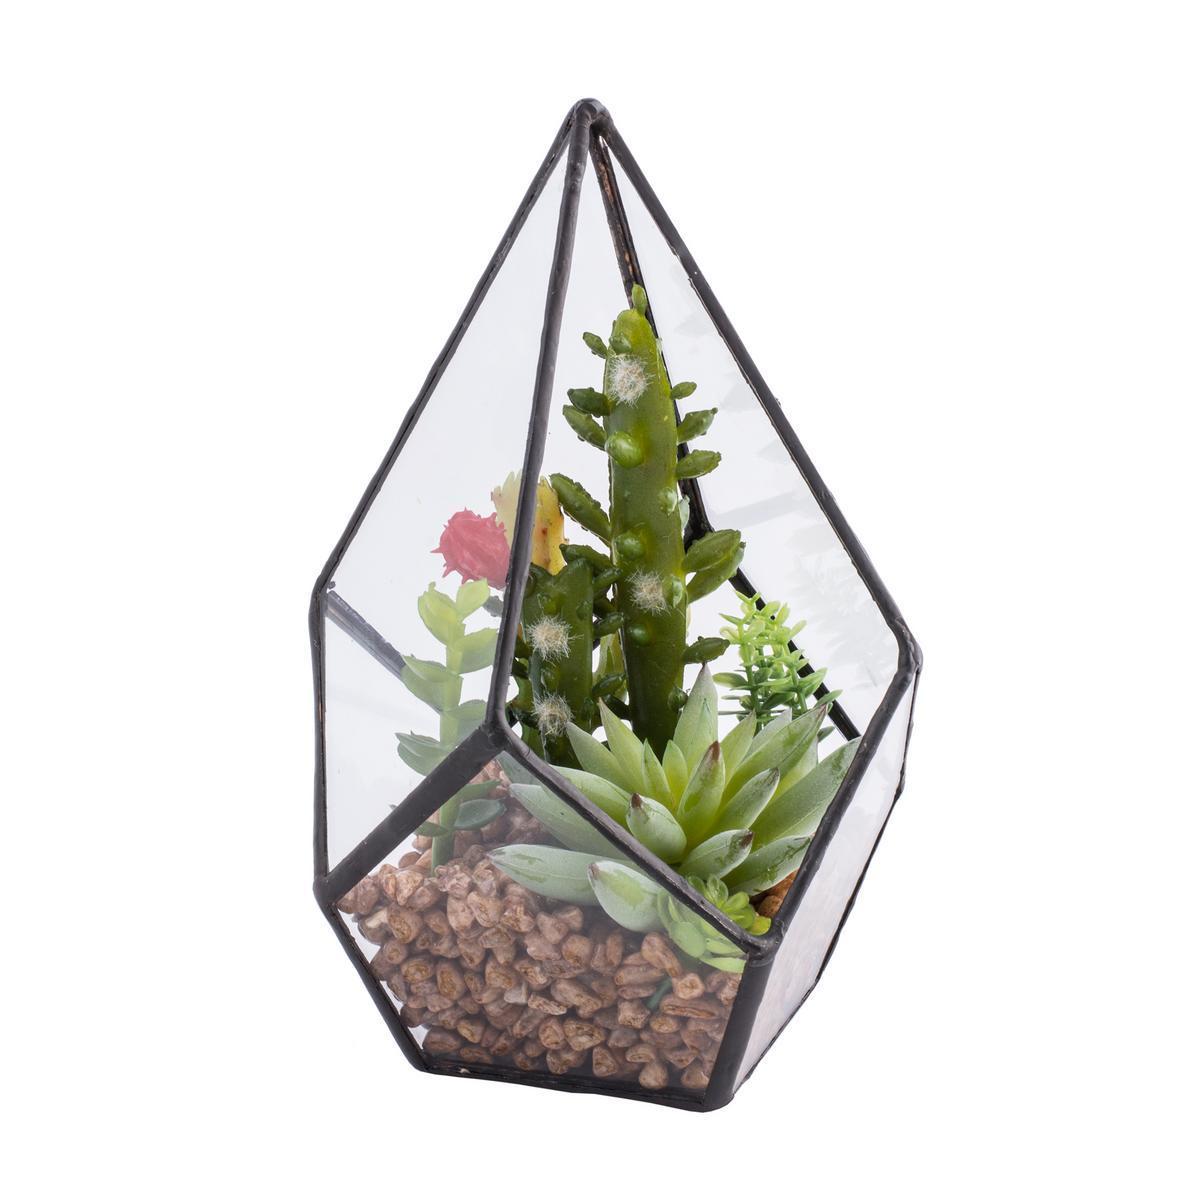 Serre de plantes grasses artificielles - Pvc et verre - H 16 cm - Noir, vert et transparent